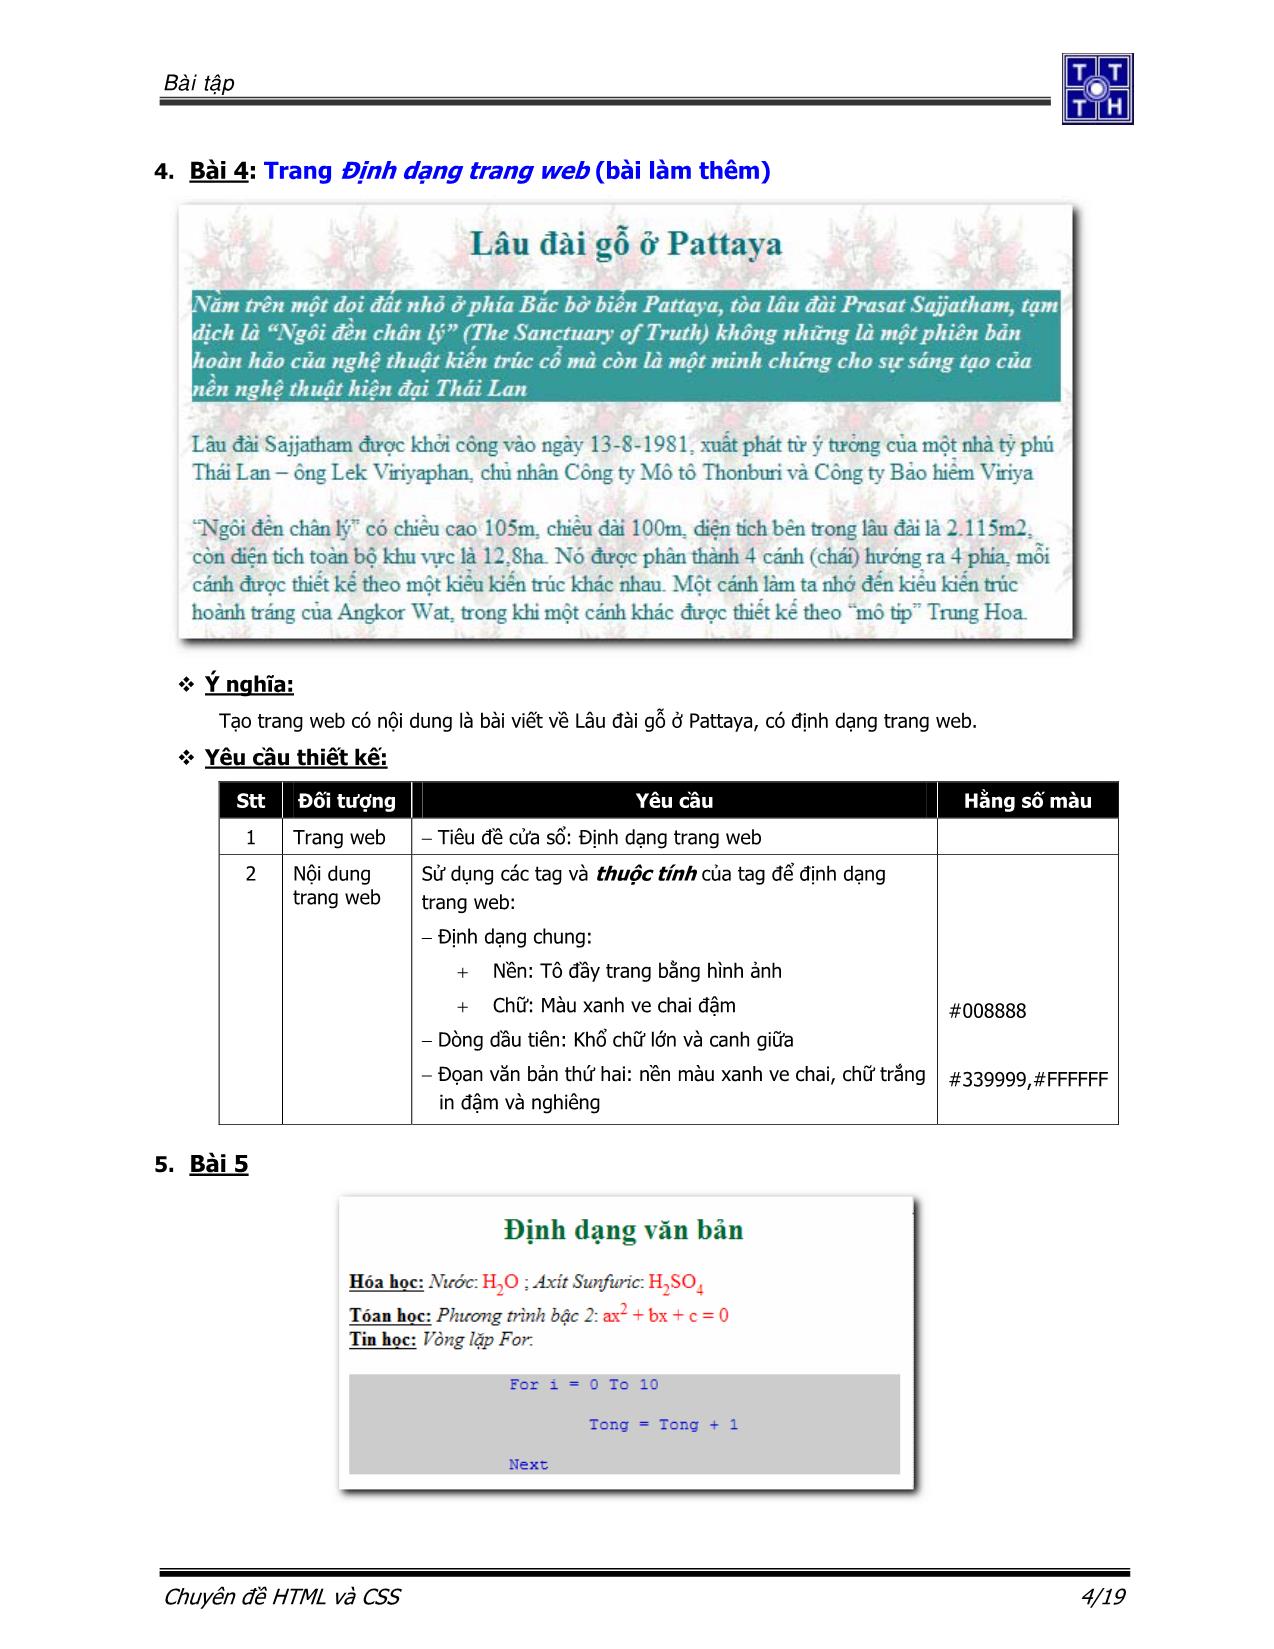 Bài tập Ngôn ngữ HTML và CSS trang 5